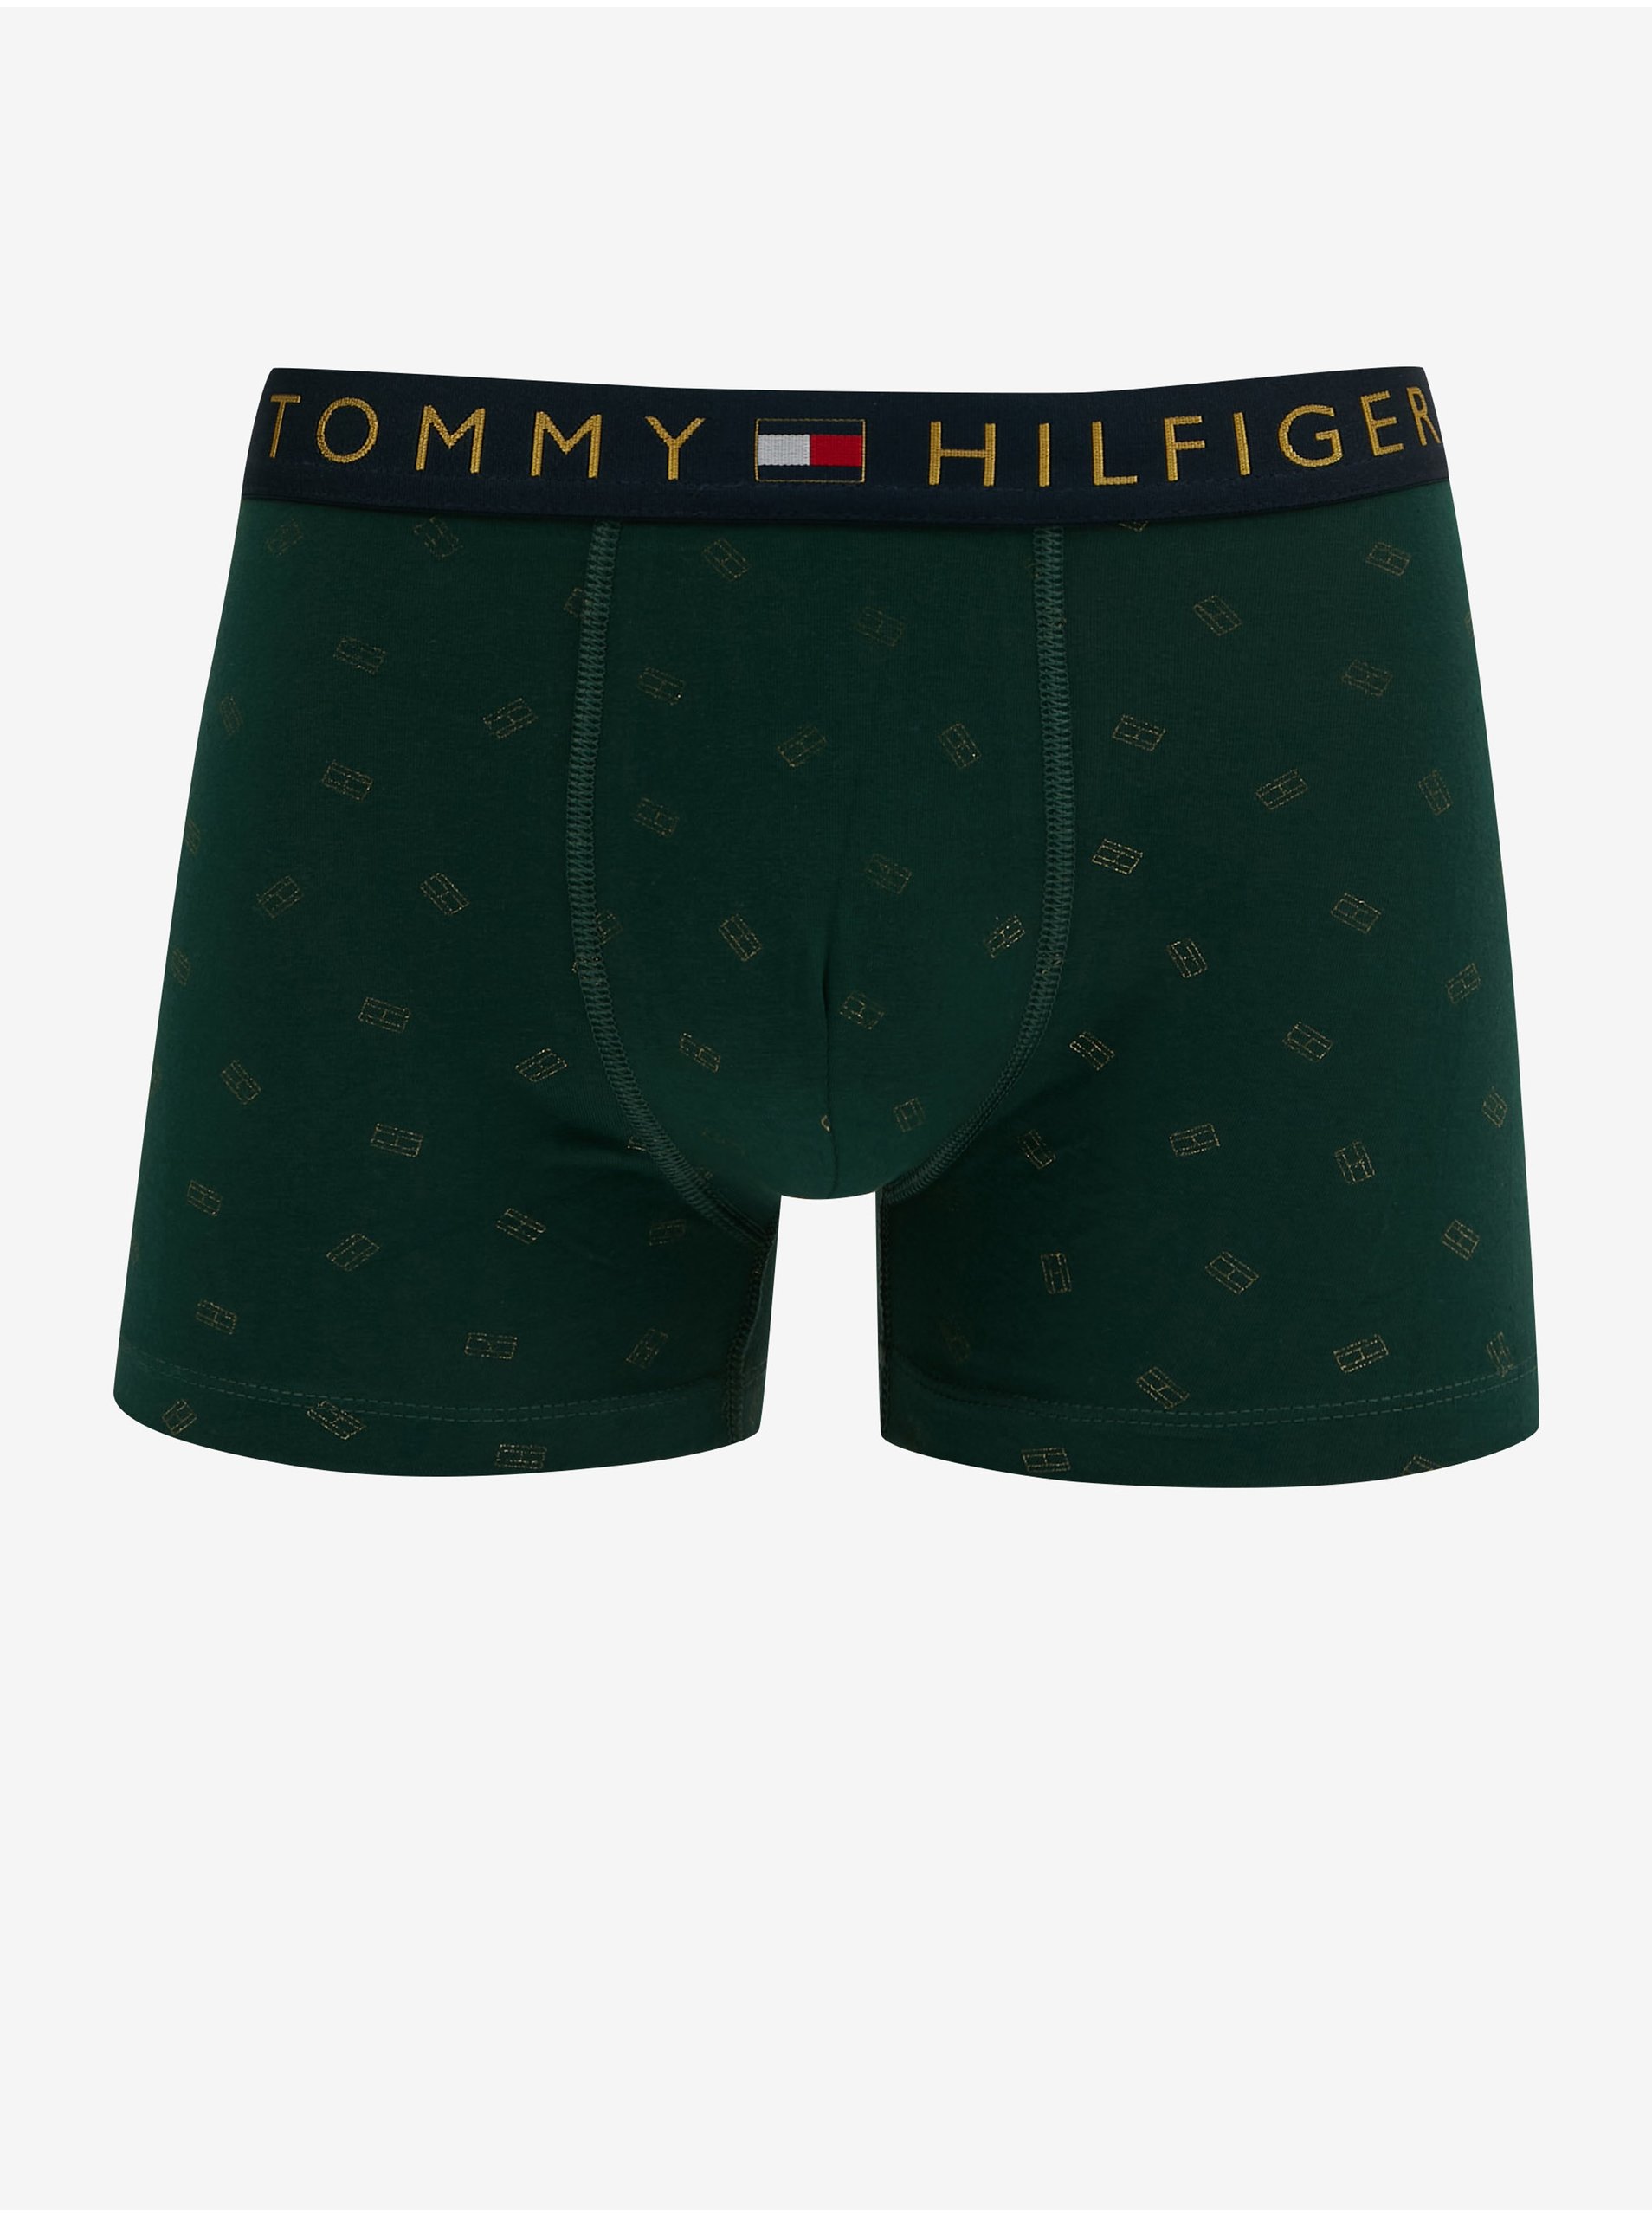 Lacno Boxerky pre mužov Tommy Hilfiger - zelená, tmavomodrá